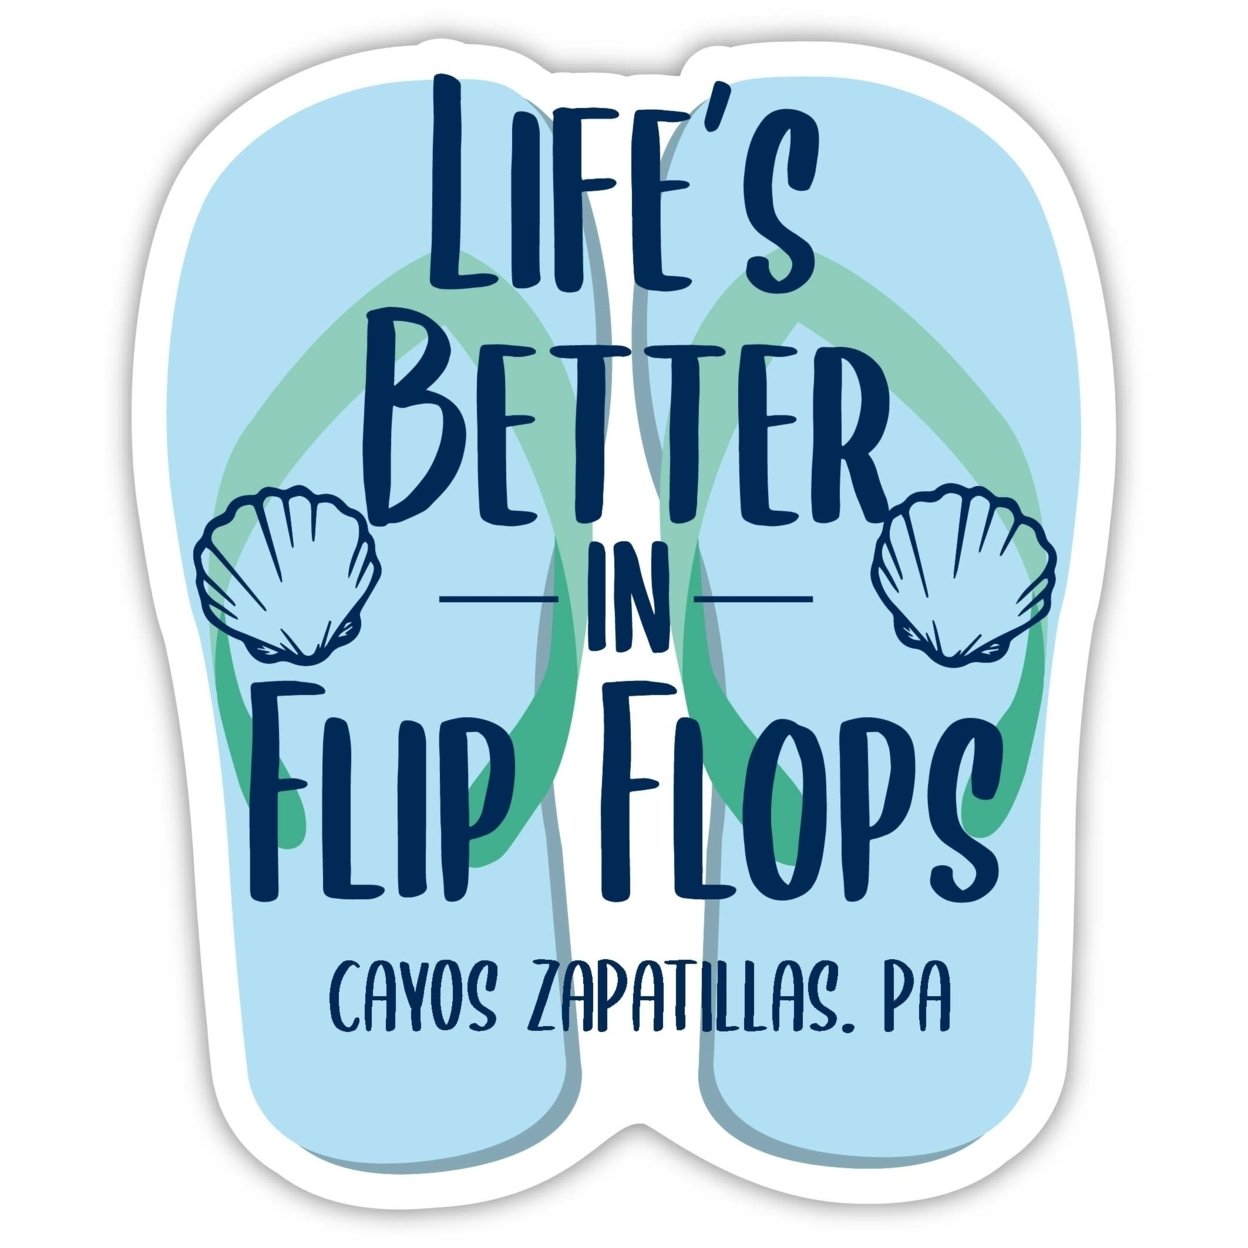 Cayos Zapatillas Panama Souvenir 4 Inch Vinyl Decal Sticker Flip Flop Design